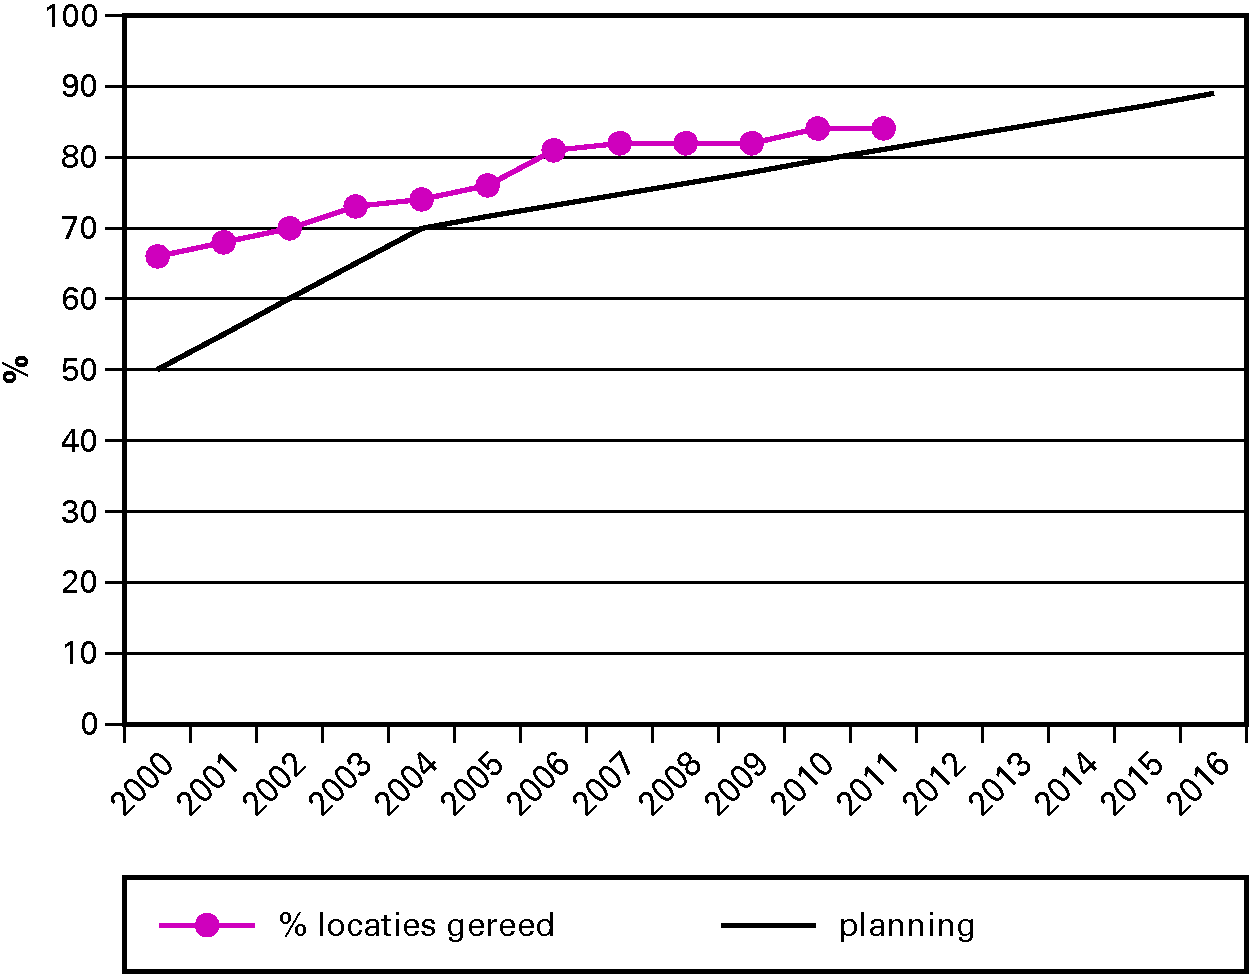 Figuur 4 Percentage locaties gereed van het bodemsaneringsprogramma van Defensie gerelateerd aan het lineaire verloop van het programma tussen 2000 en 2016